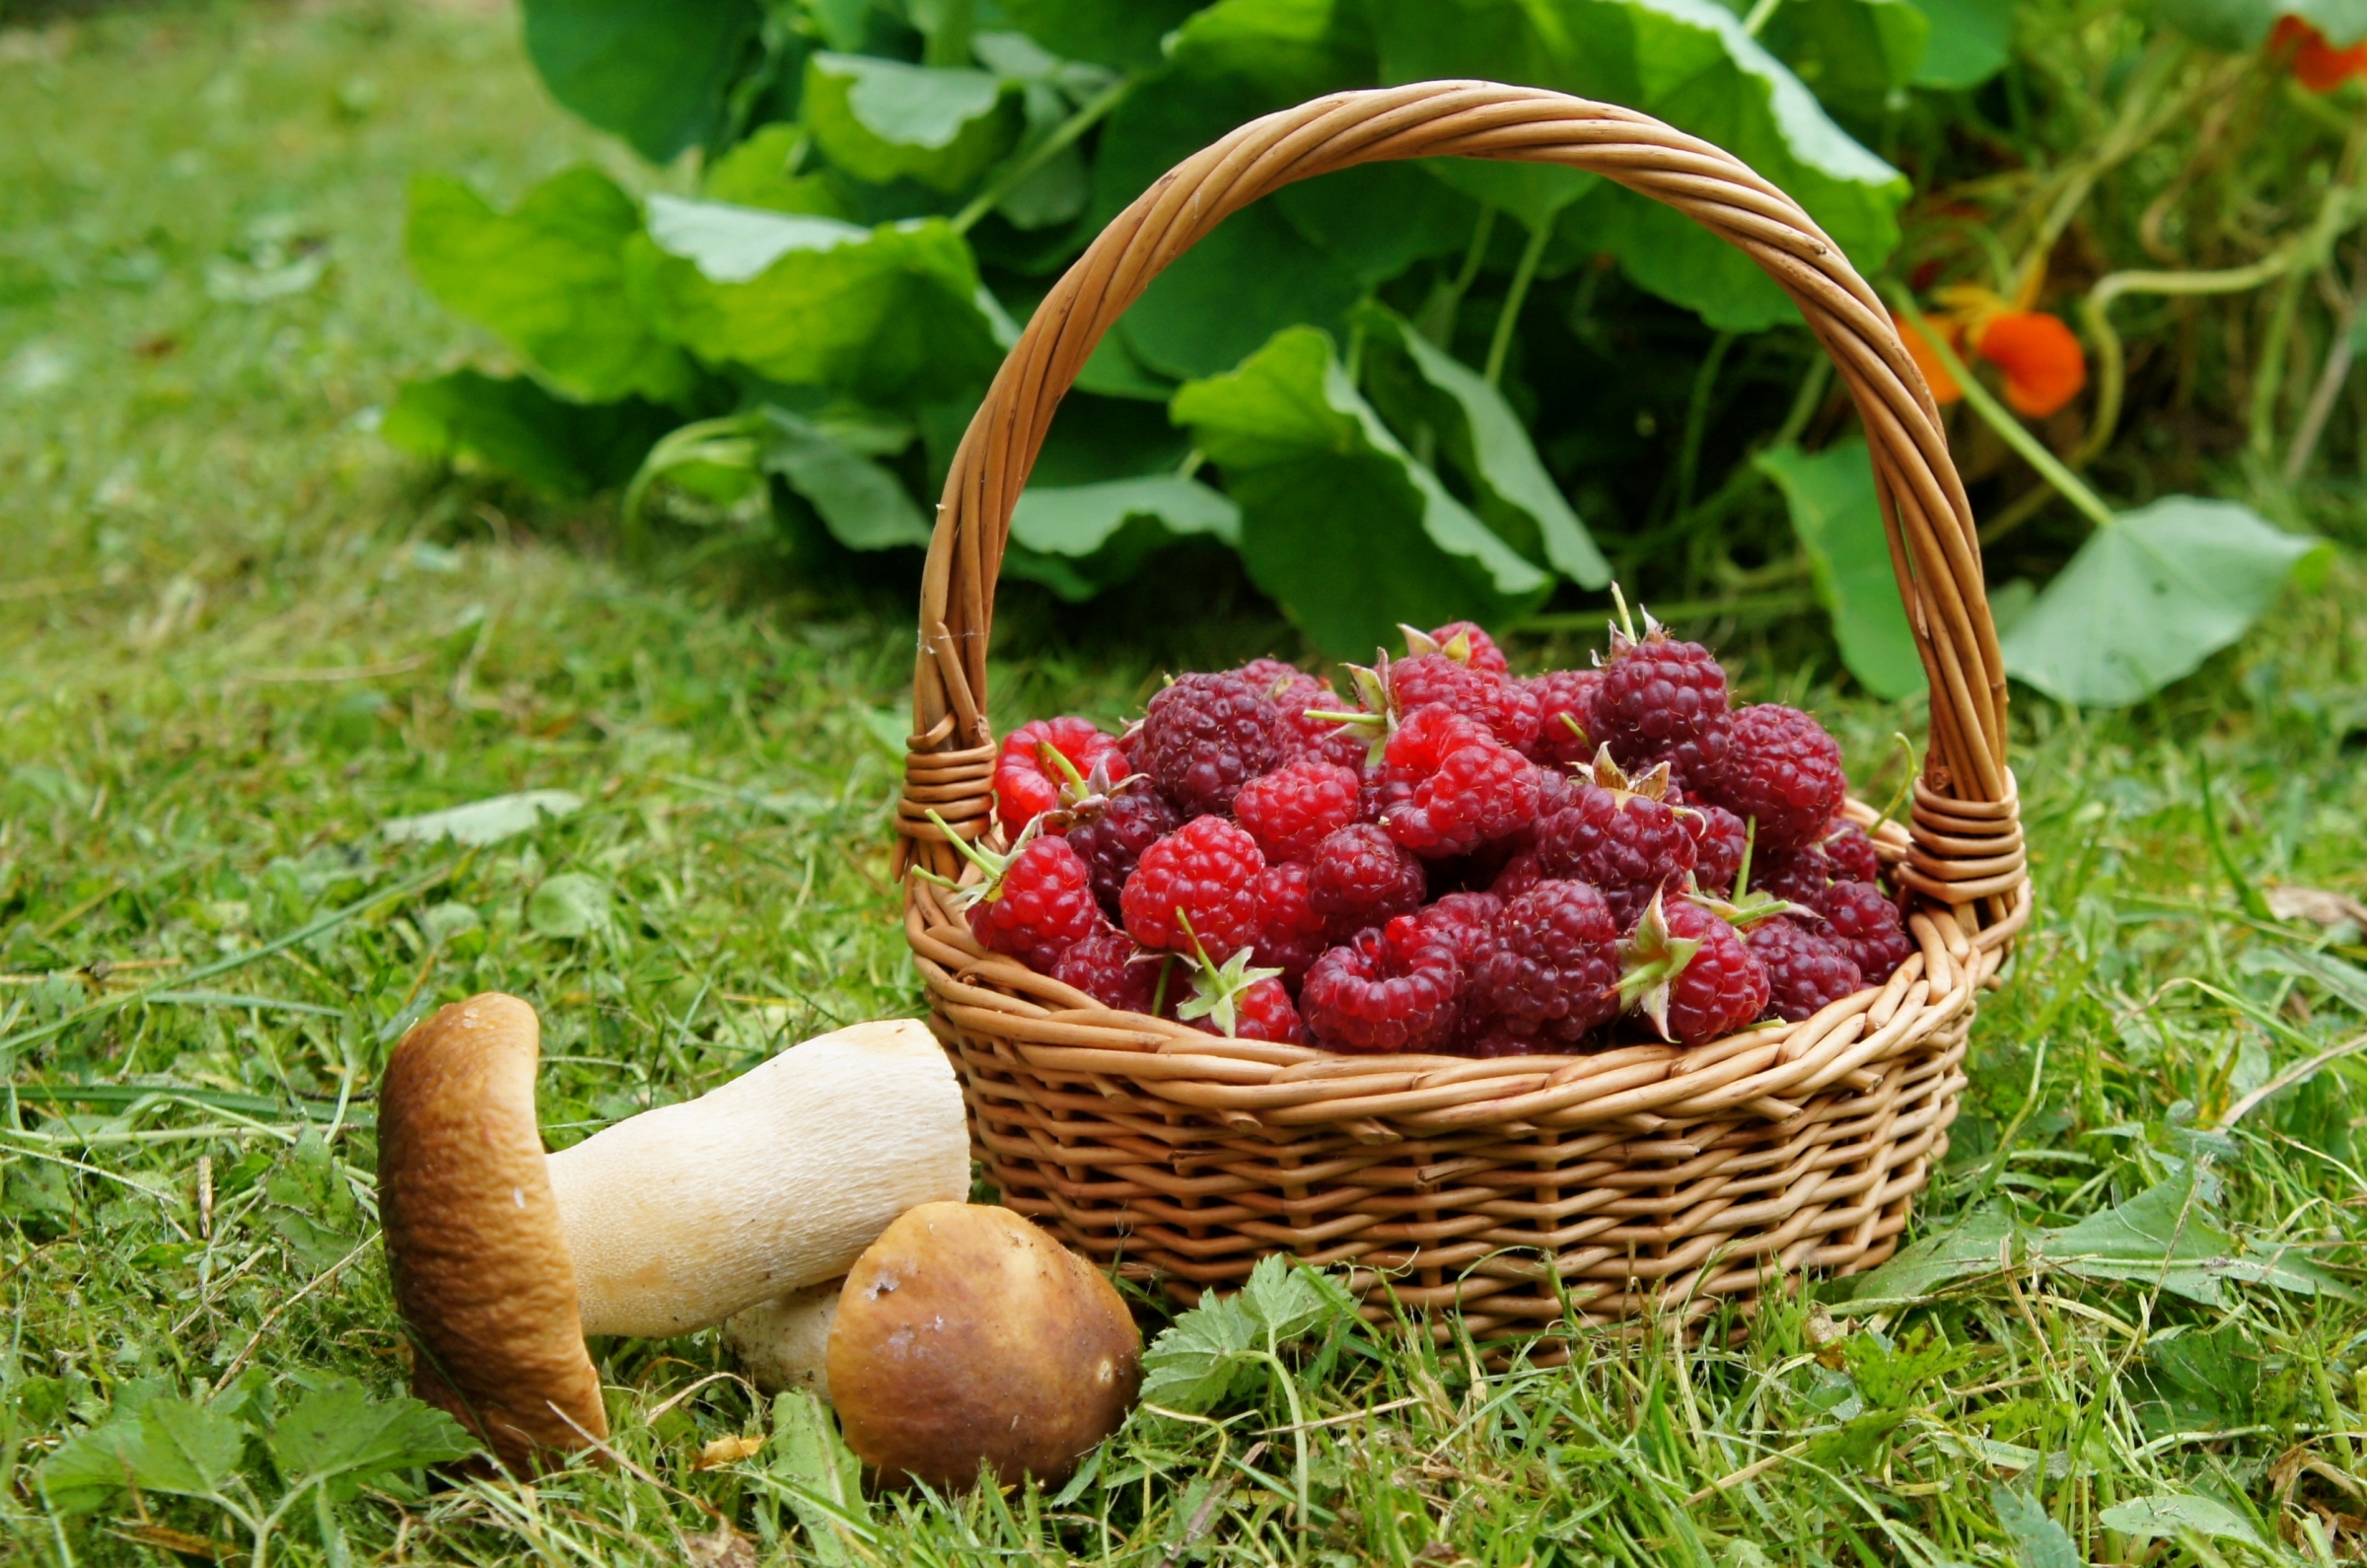 Медики советуют проверять грибы и ягоды на радиацию